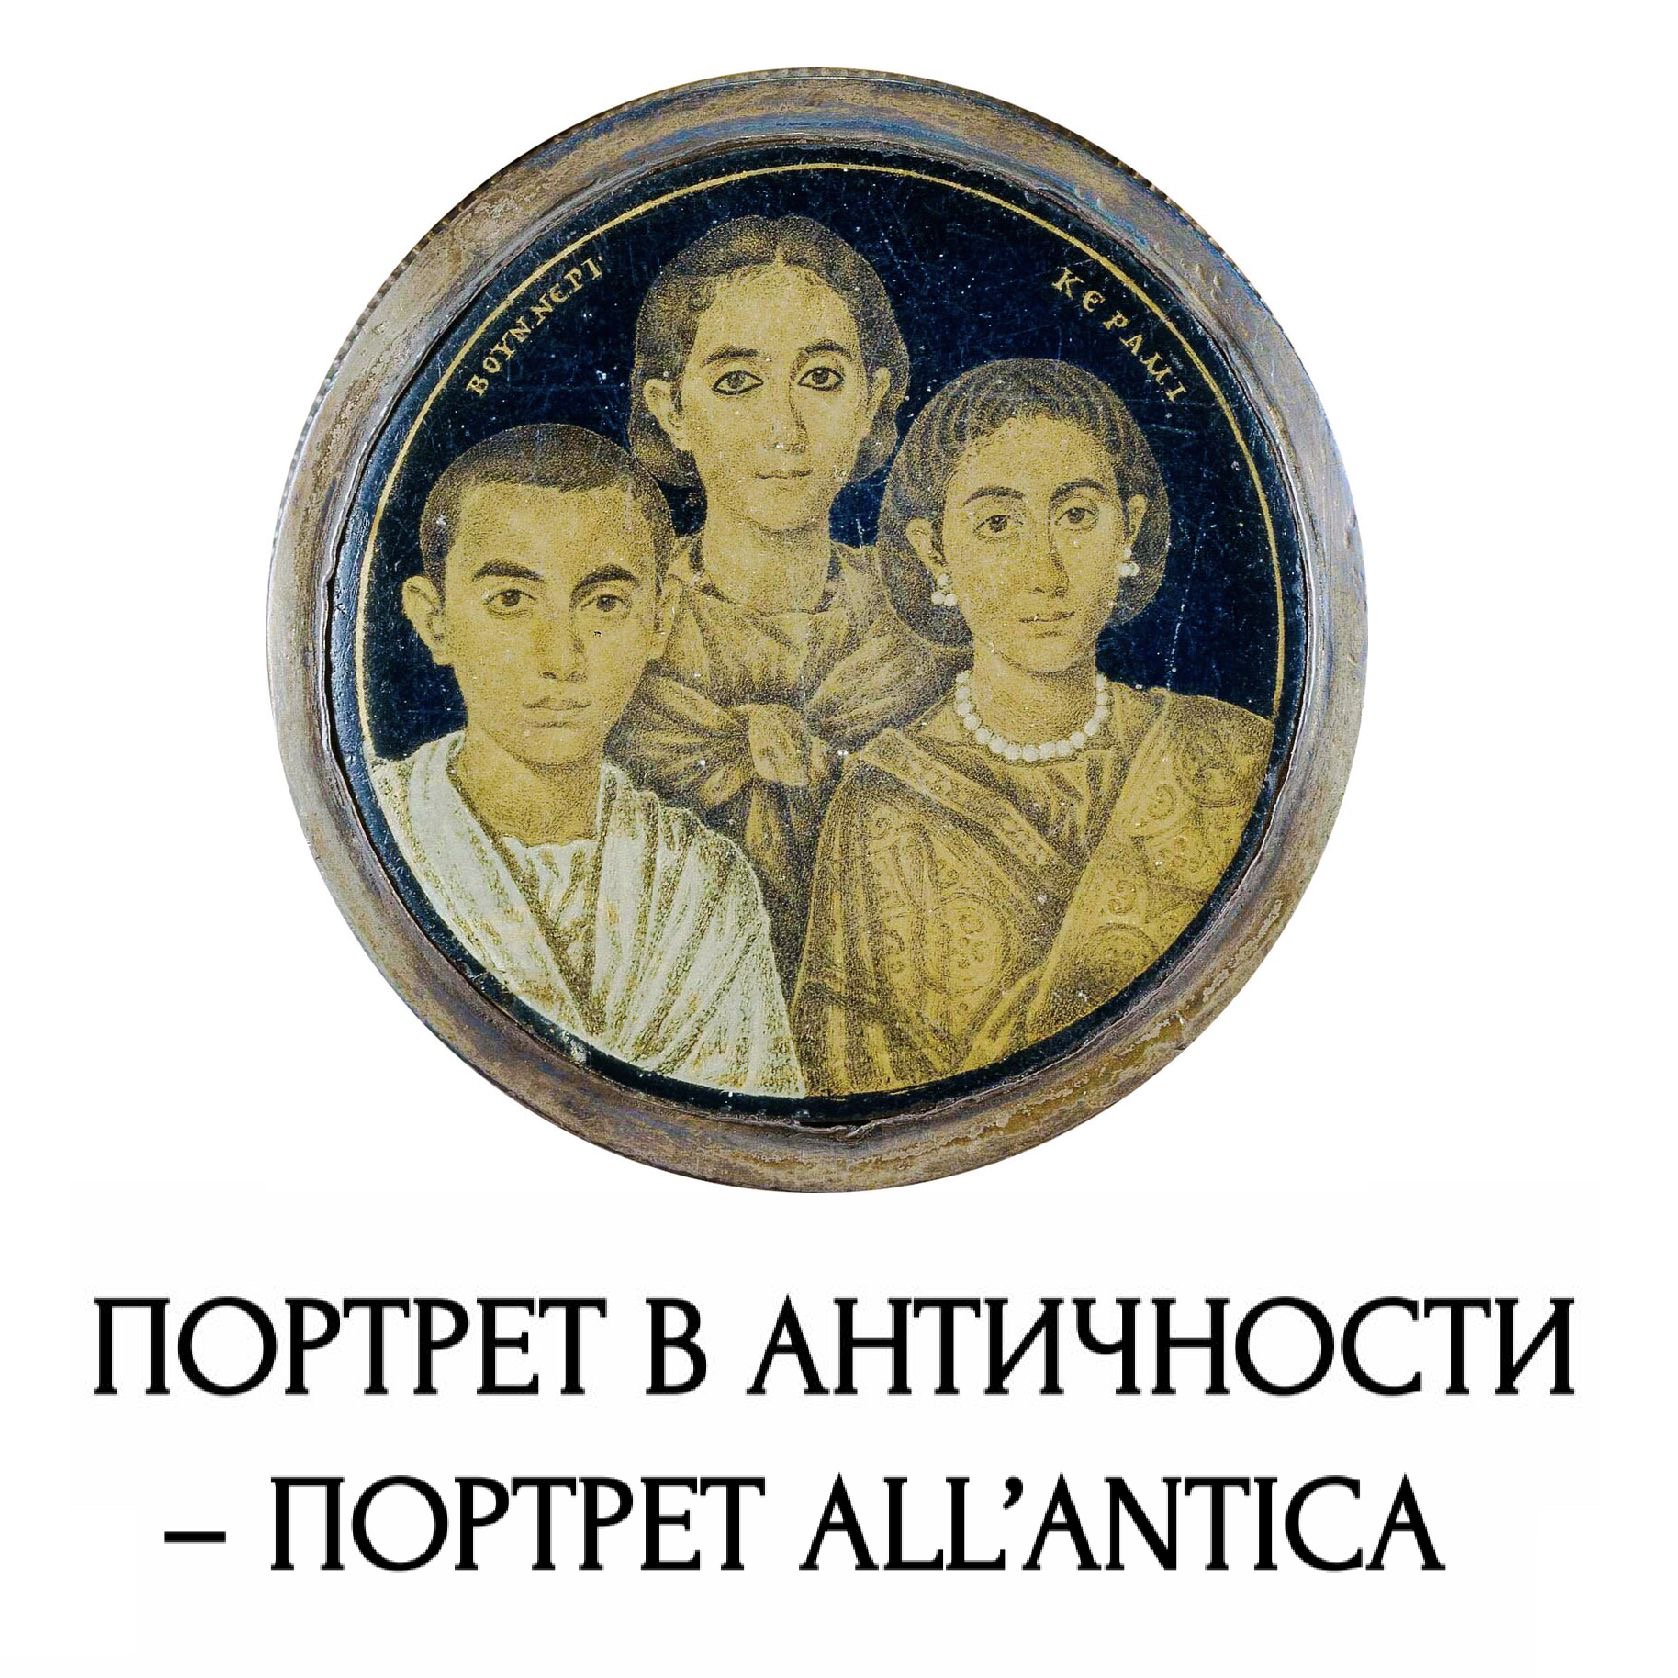 Конференция "Портрет в античности – Портрет all’antica"